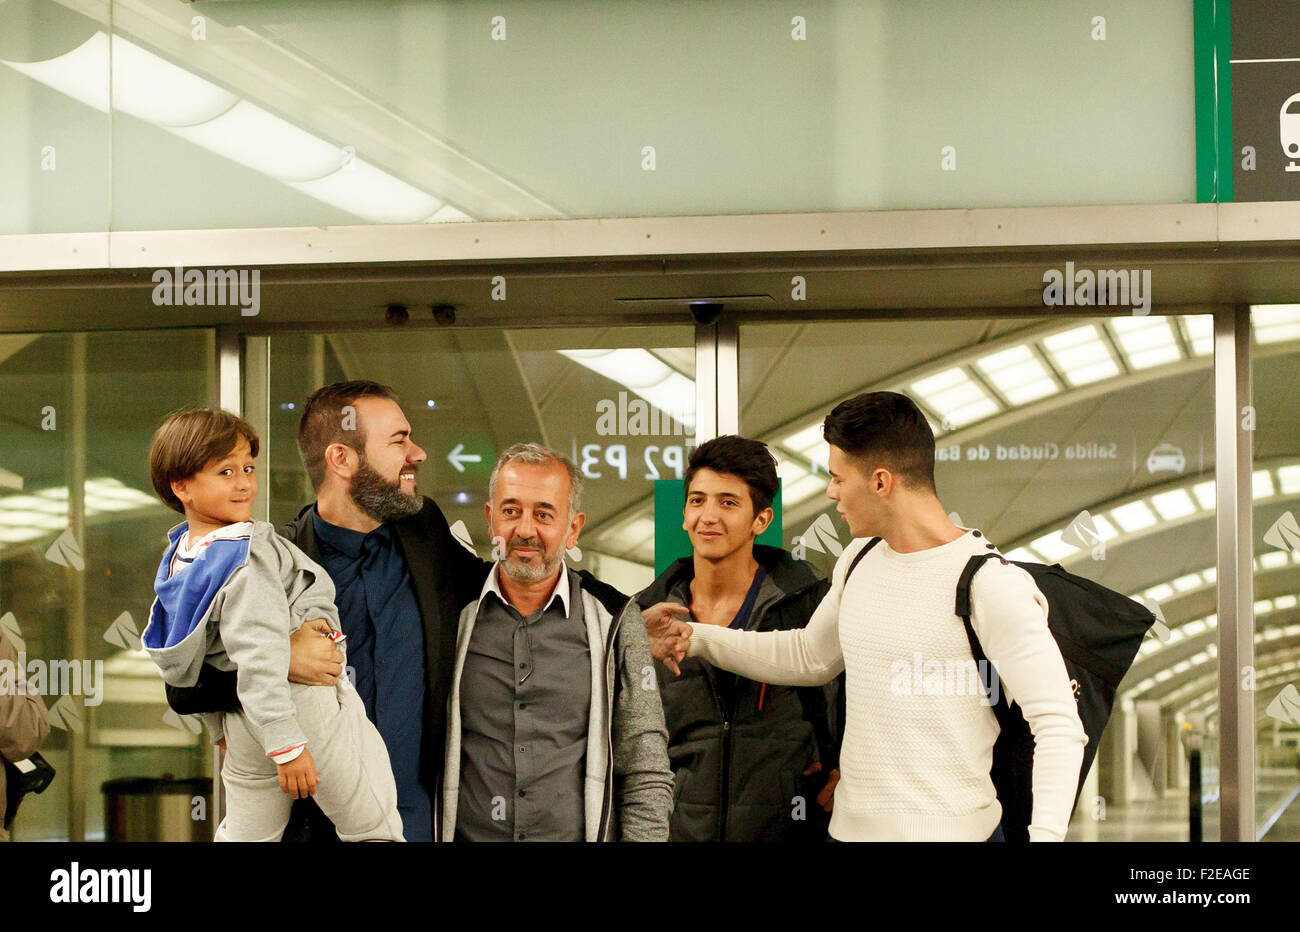 Spanien, Madrid: die syrischen Flüchtlinge Osama Abdul Mohsen und sein Sohn Zaid, die von der ungarischen Journalistin Petra L‡szl getreten waren – in der ungarischen Grenze ist nach Madrid dank Miguel Angel Galan (links im Bild der Te), die strebt an, der nächste Präsident des spanischen Fußballverbandes, in Madrid am 17. September 2015 werden ankommen. (Foto von Guillermo Martinez Stockfoto